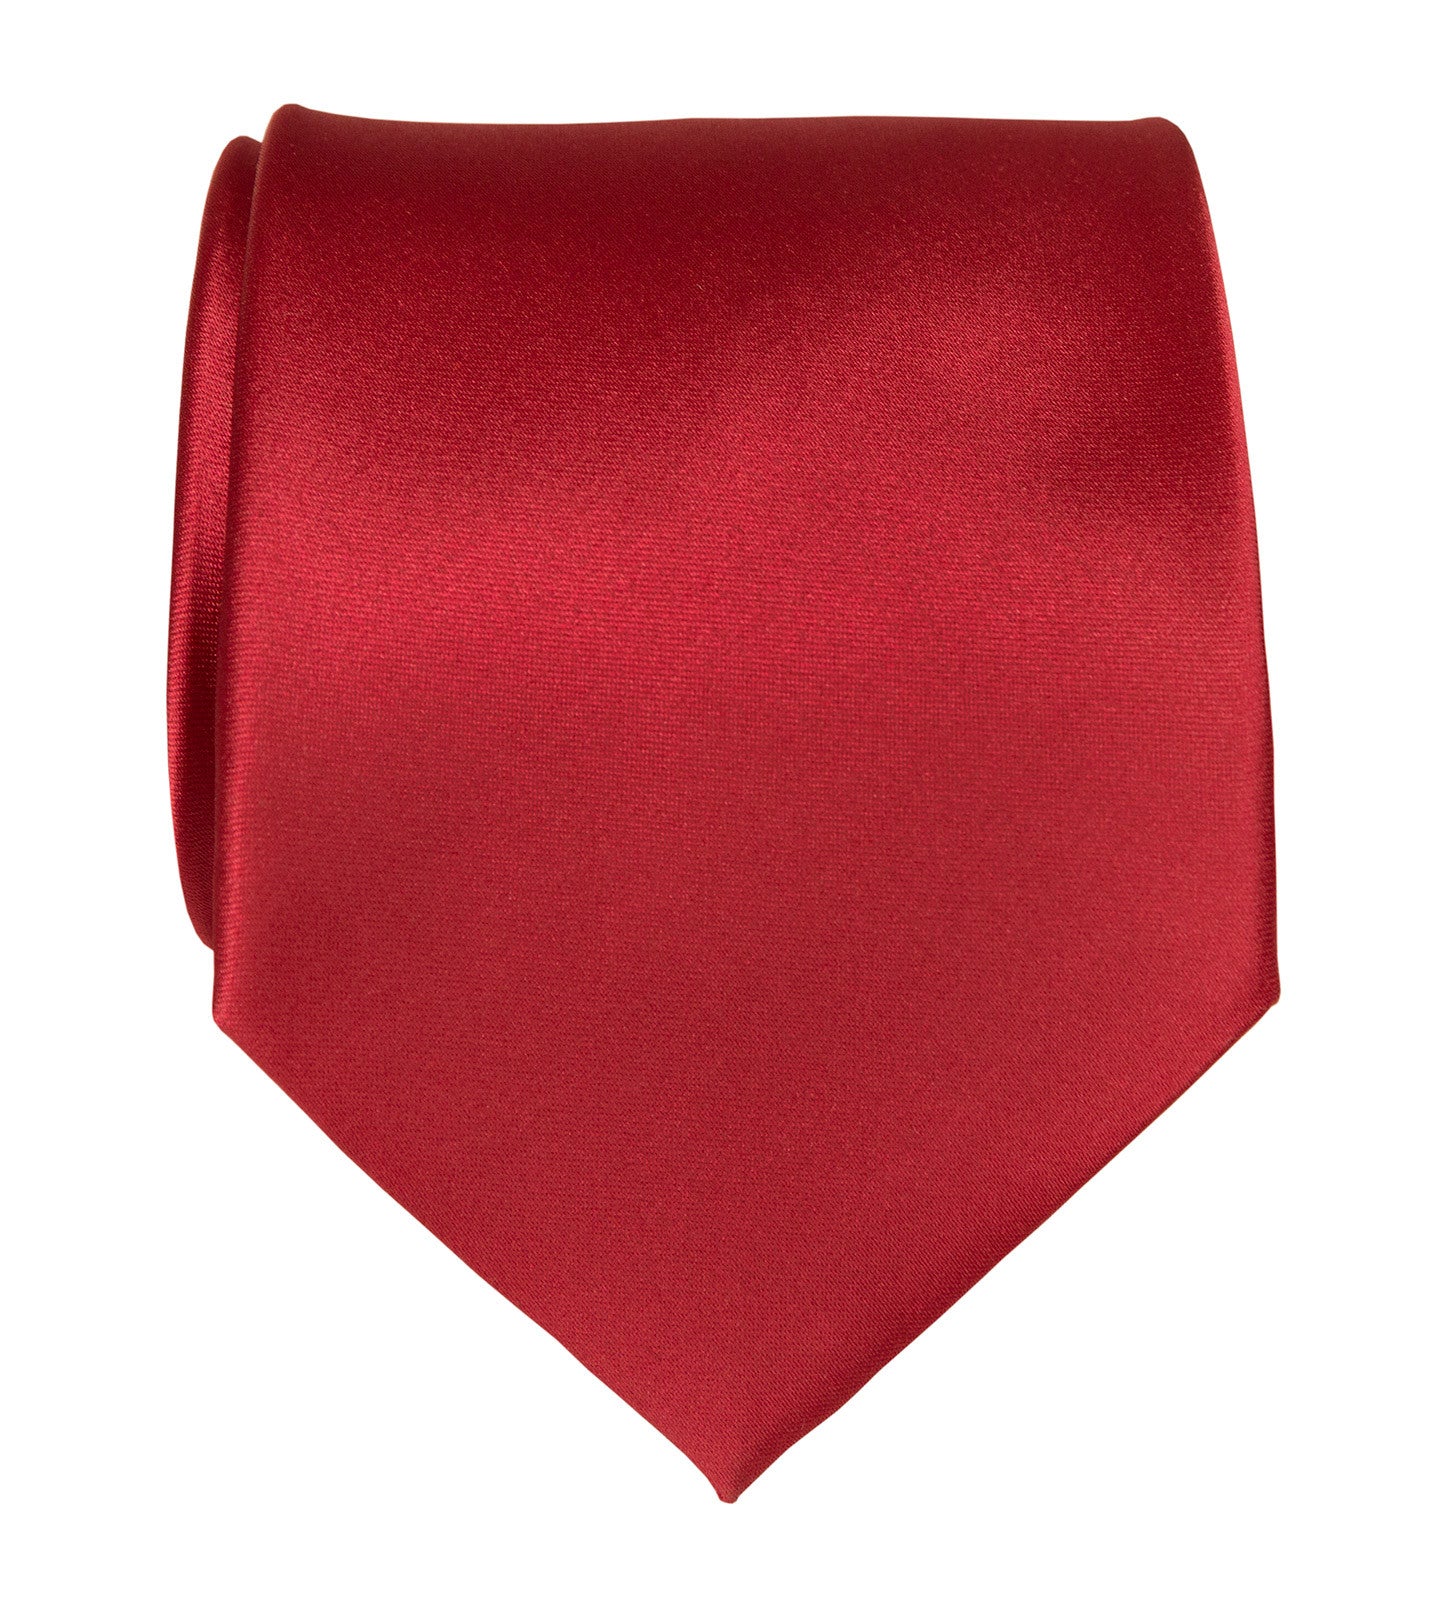 Crimson Red Necktie. Solid Color Satin Finish Tie, No Print Microfiber / Baby